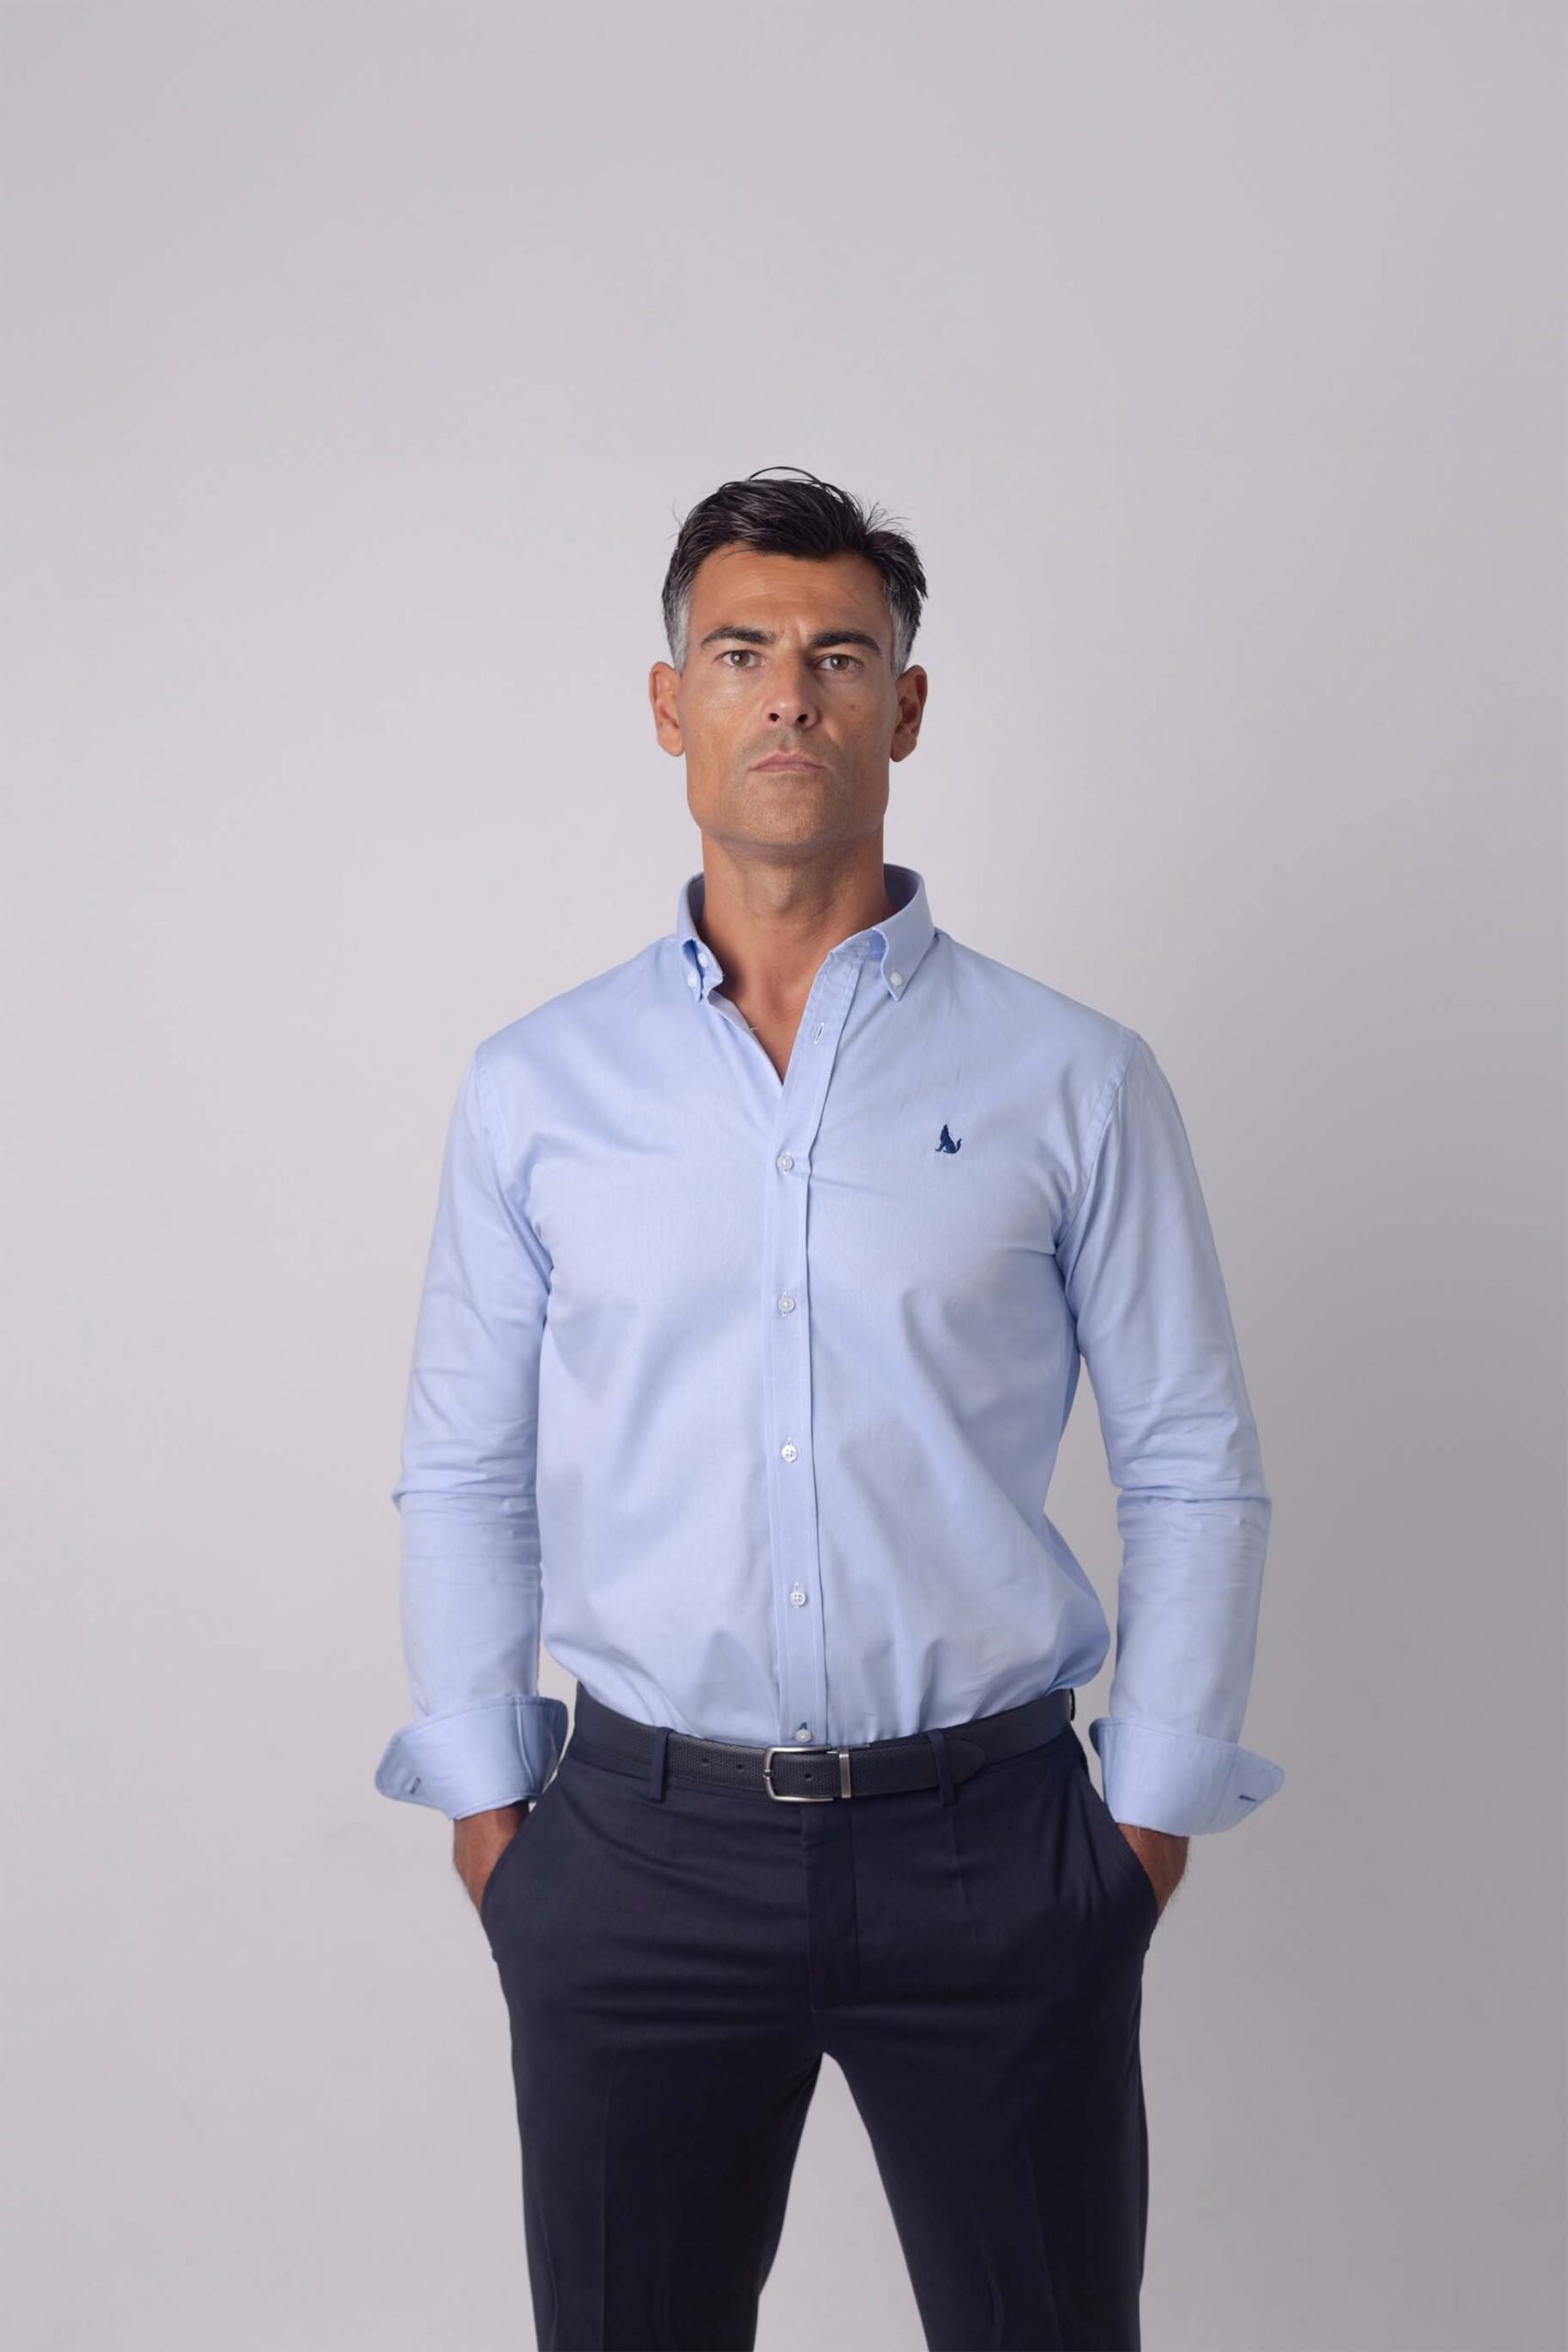 Modelo con camisa azul colección CV